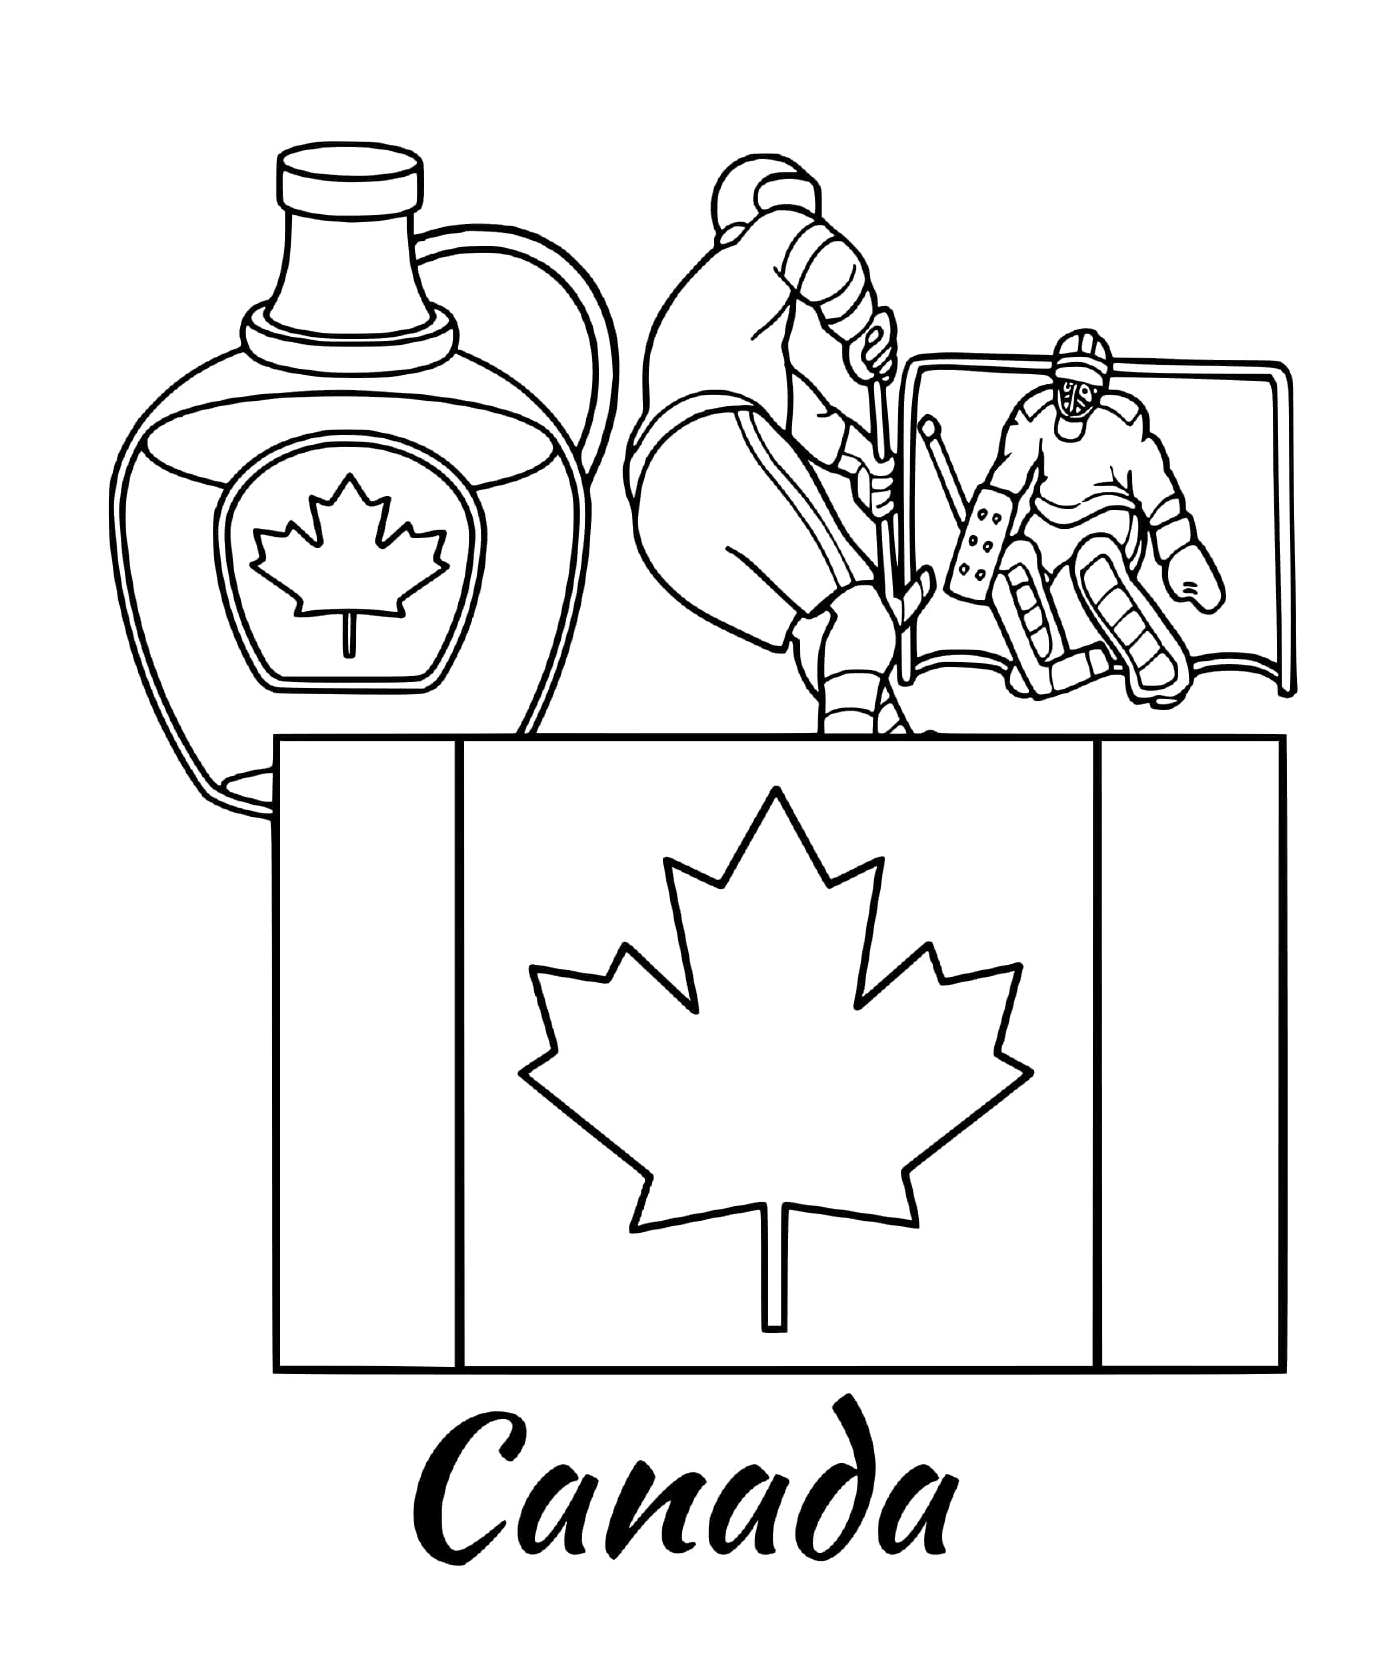  Bandeira do Canadá com Maple 